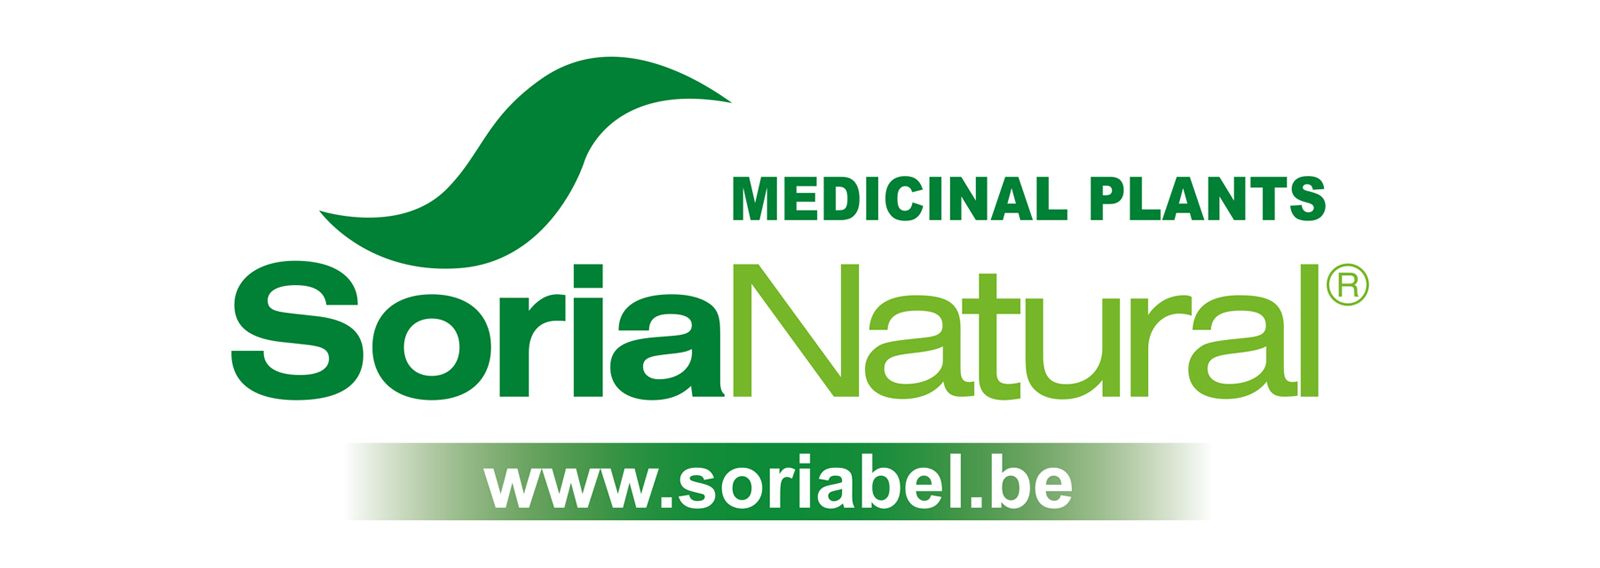 Logo-Soria-Natural---medicinal-plants---800x250